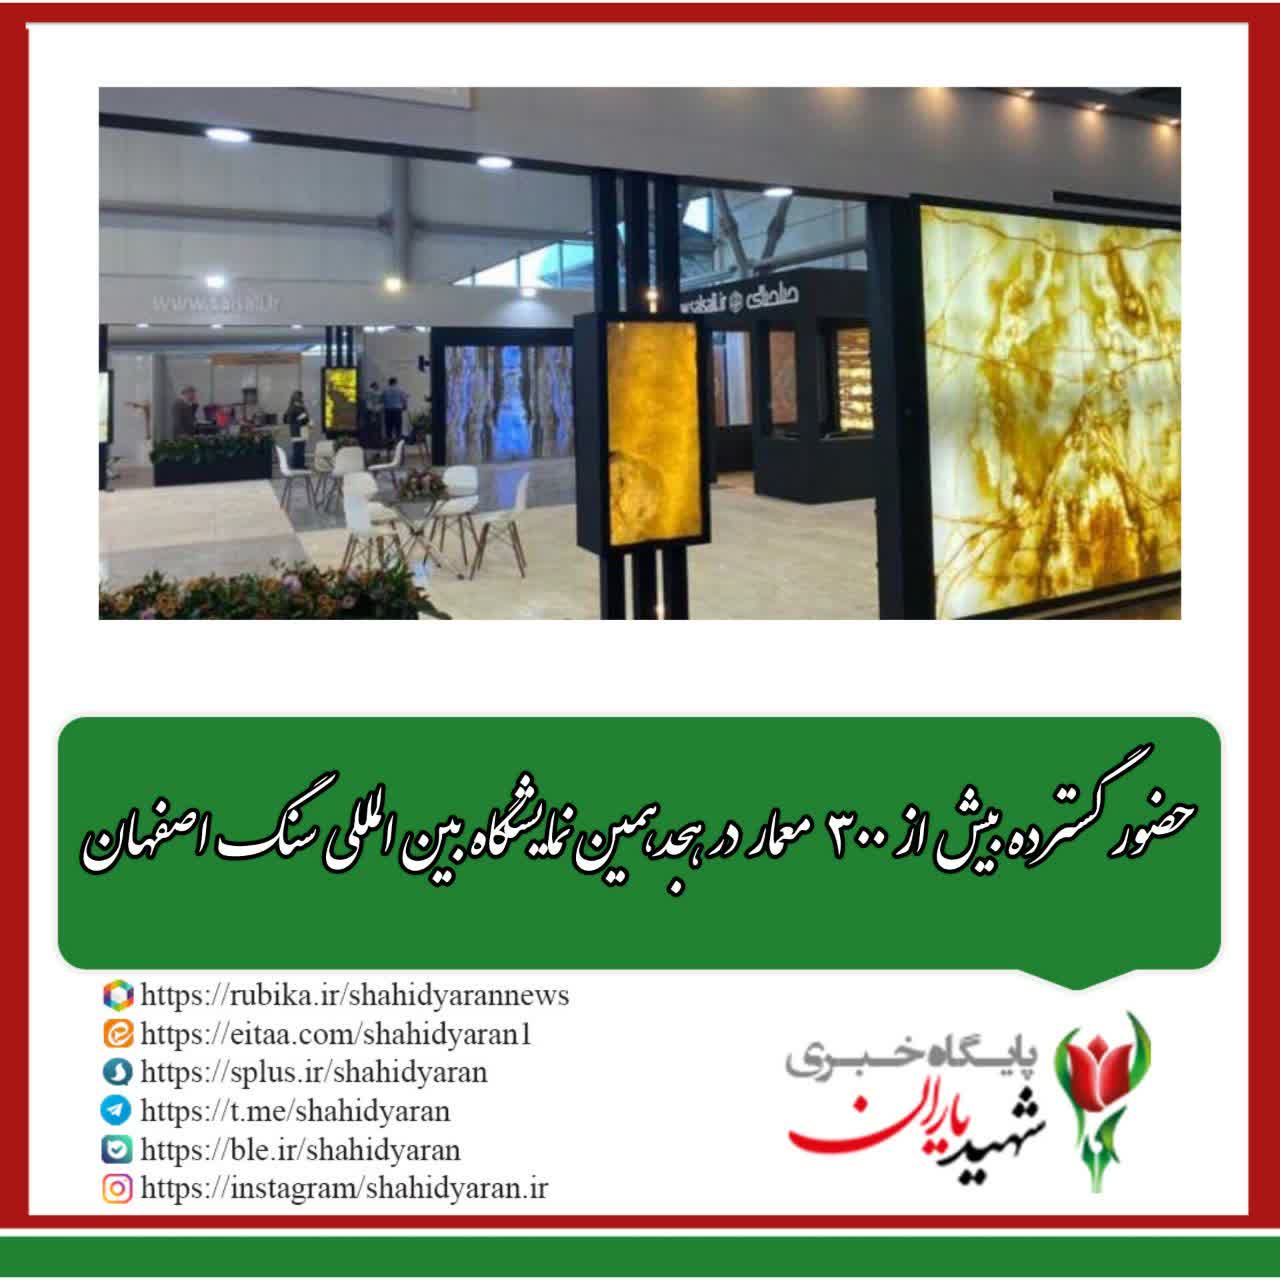 مشاور و ایده پرداز نمایشگاه سنگ اصفهان خبر داد: